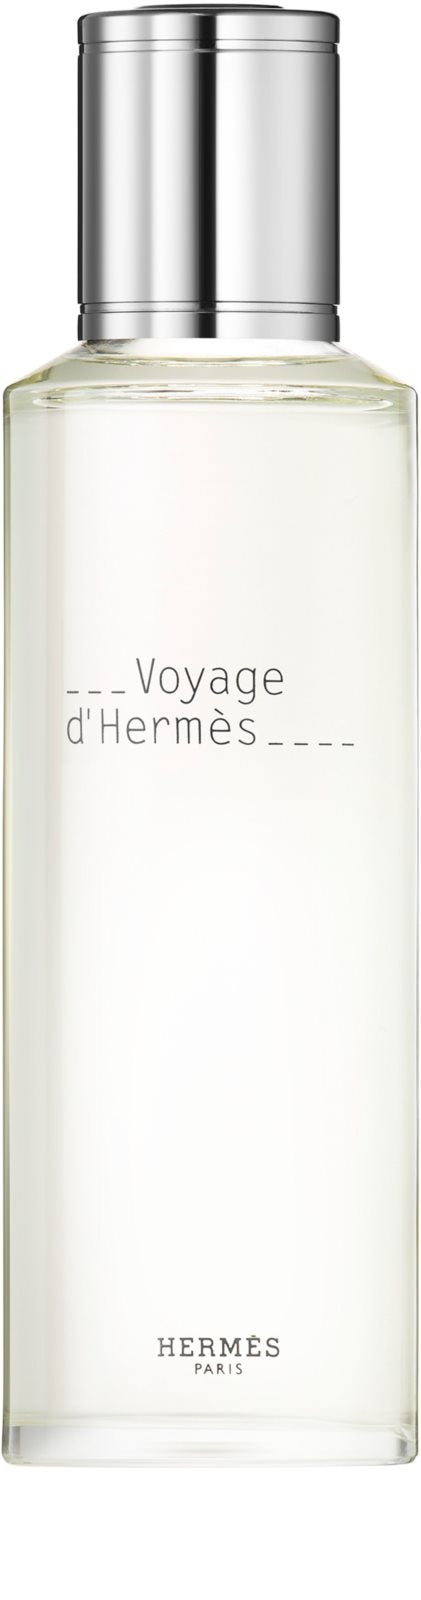 Voyage d'Hermès Refill Eau de Toilette